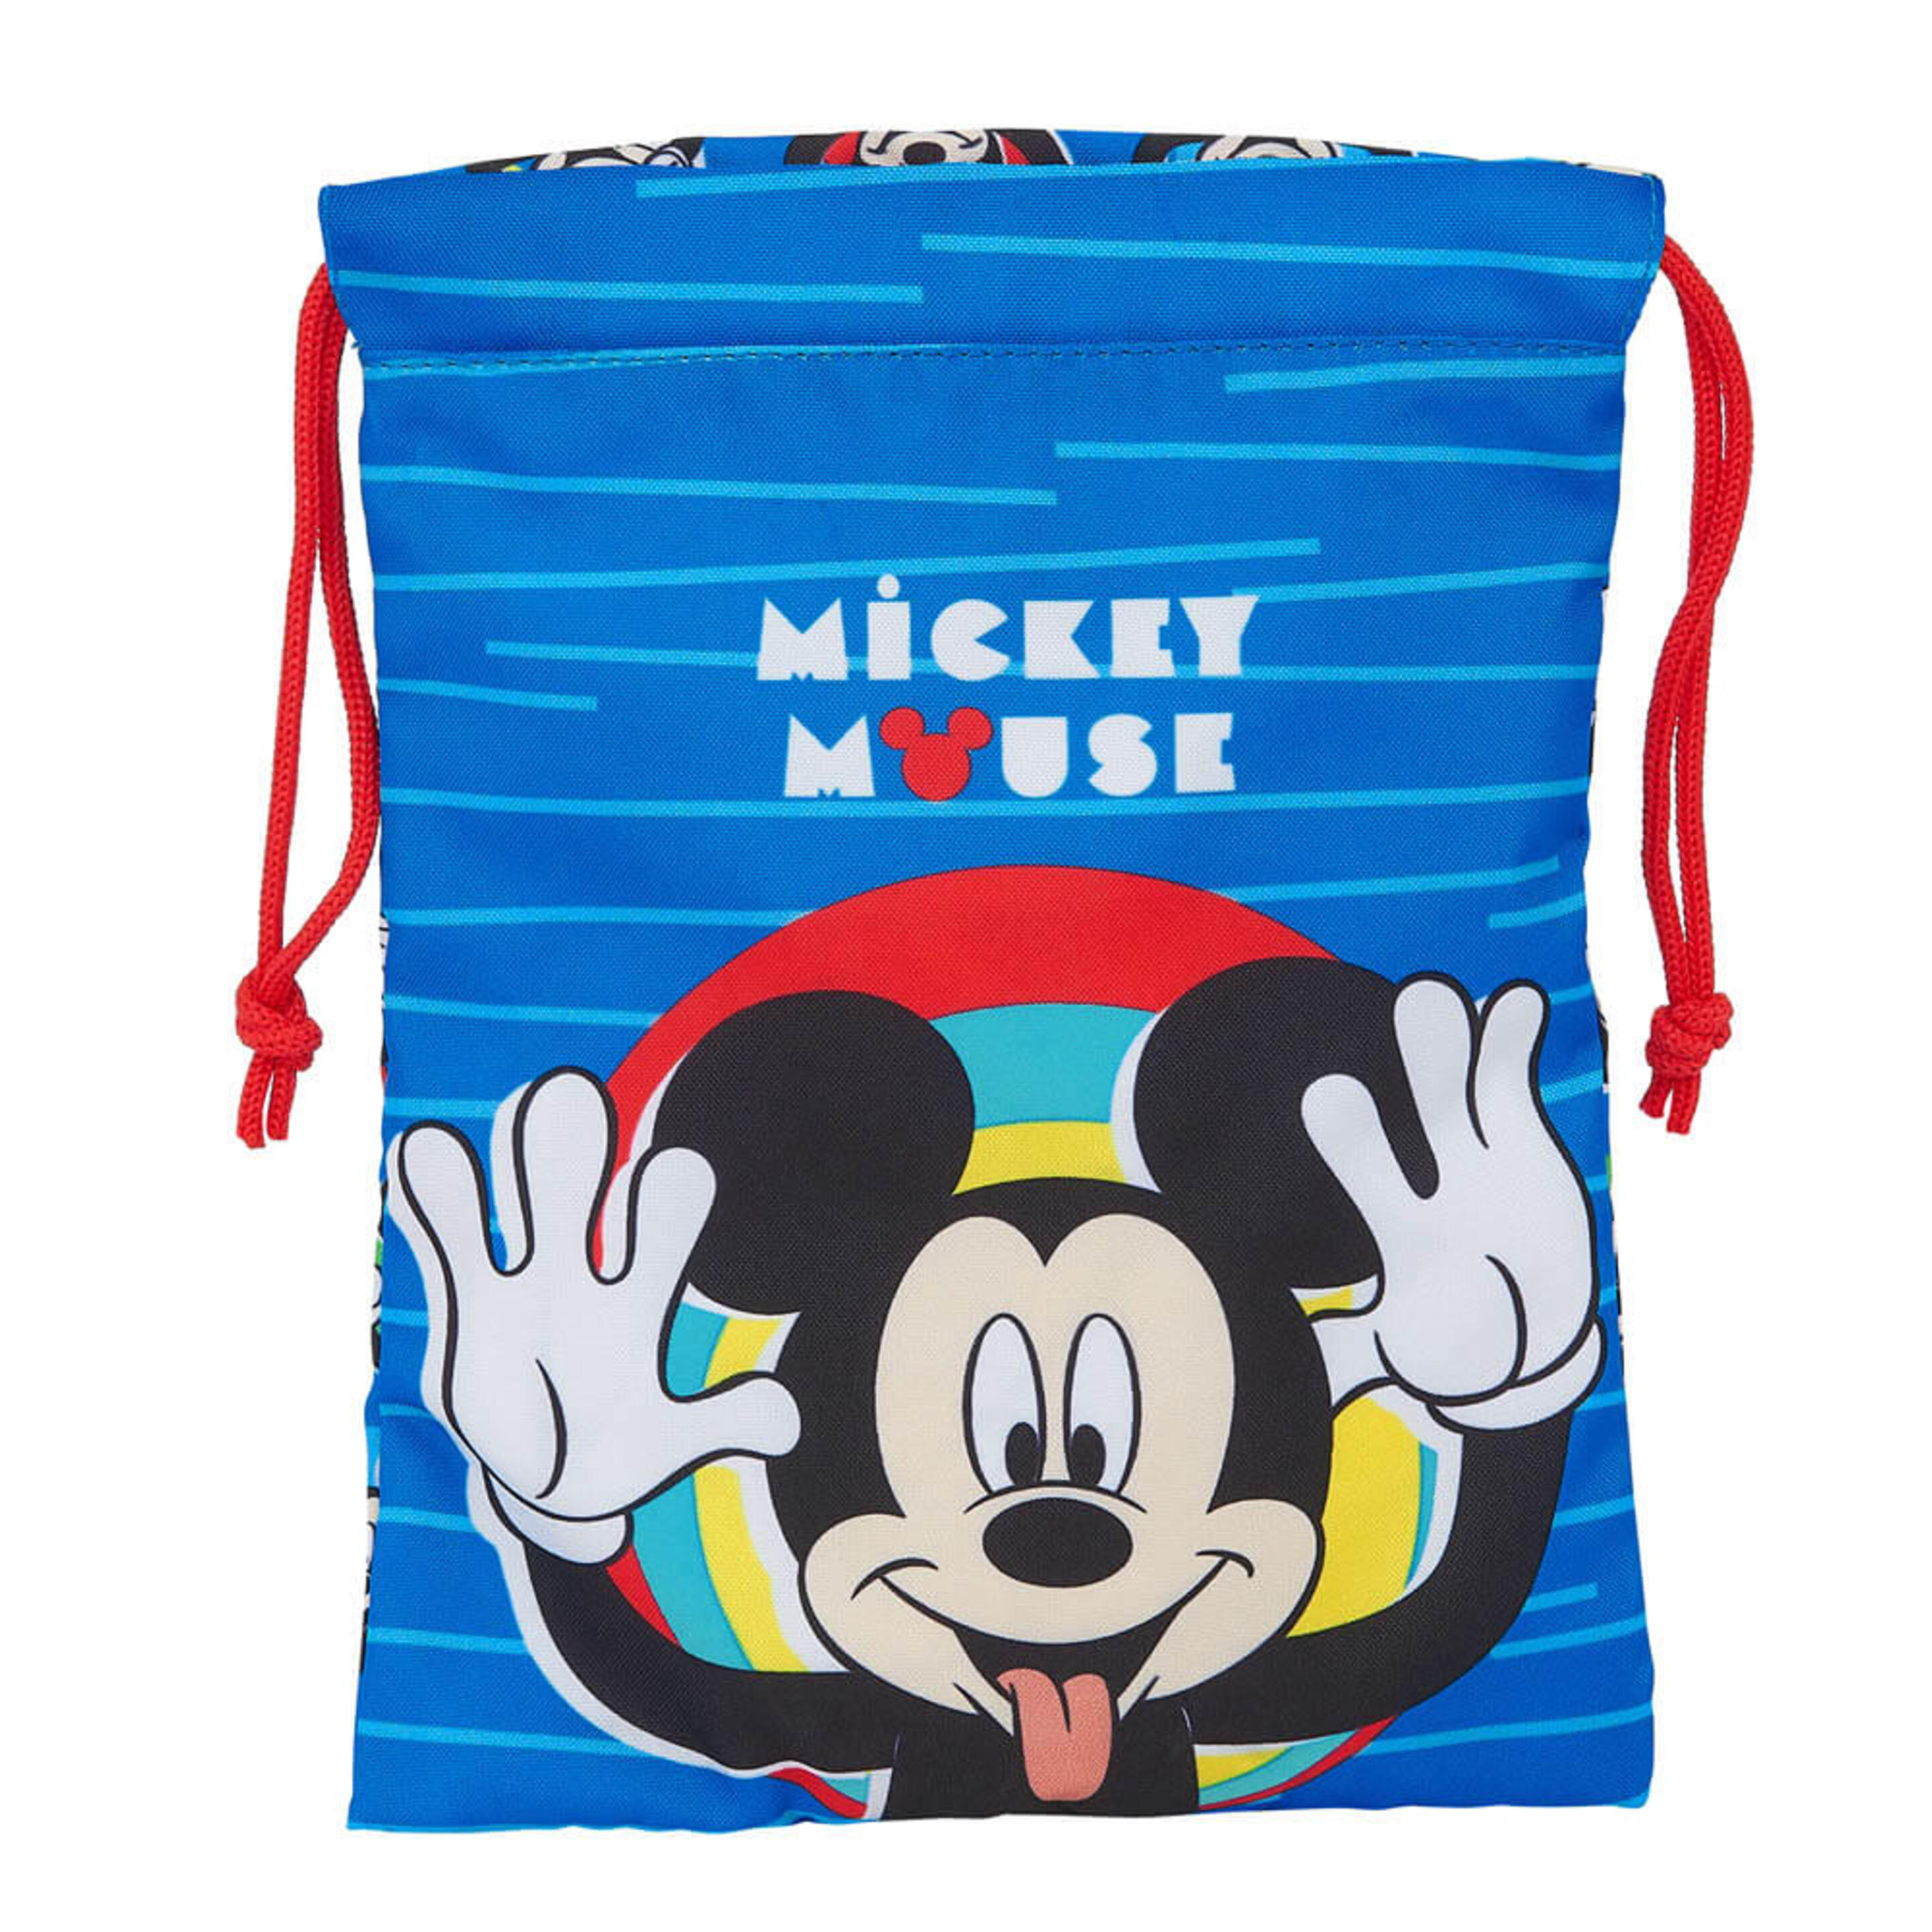 Saquito Portameriendas Mickey Mouse - multicolor - 